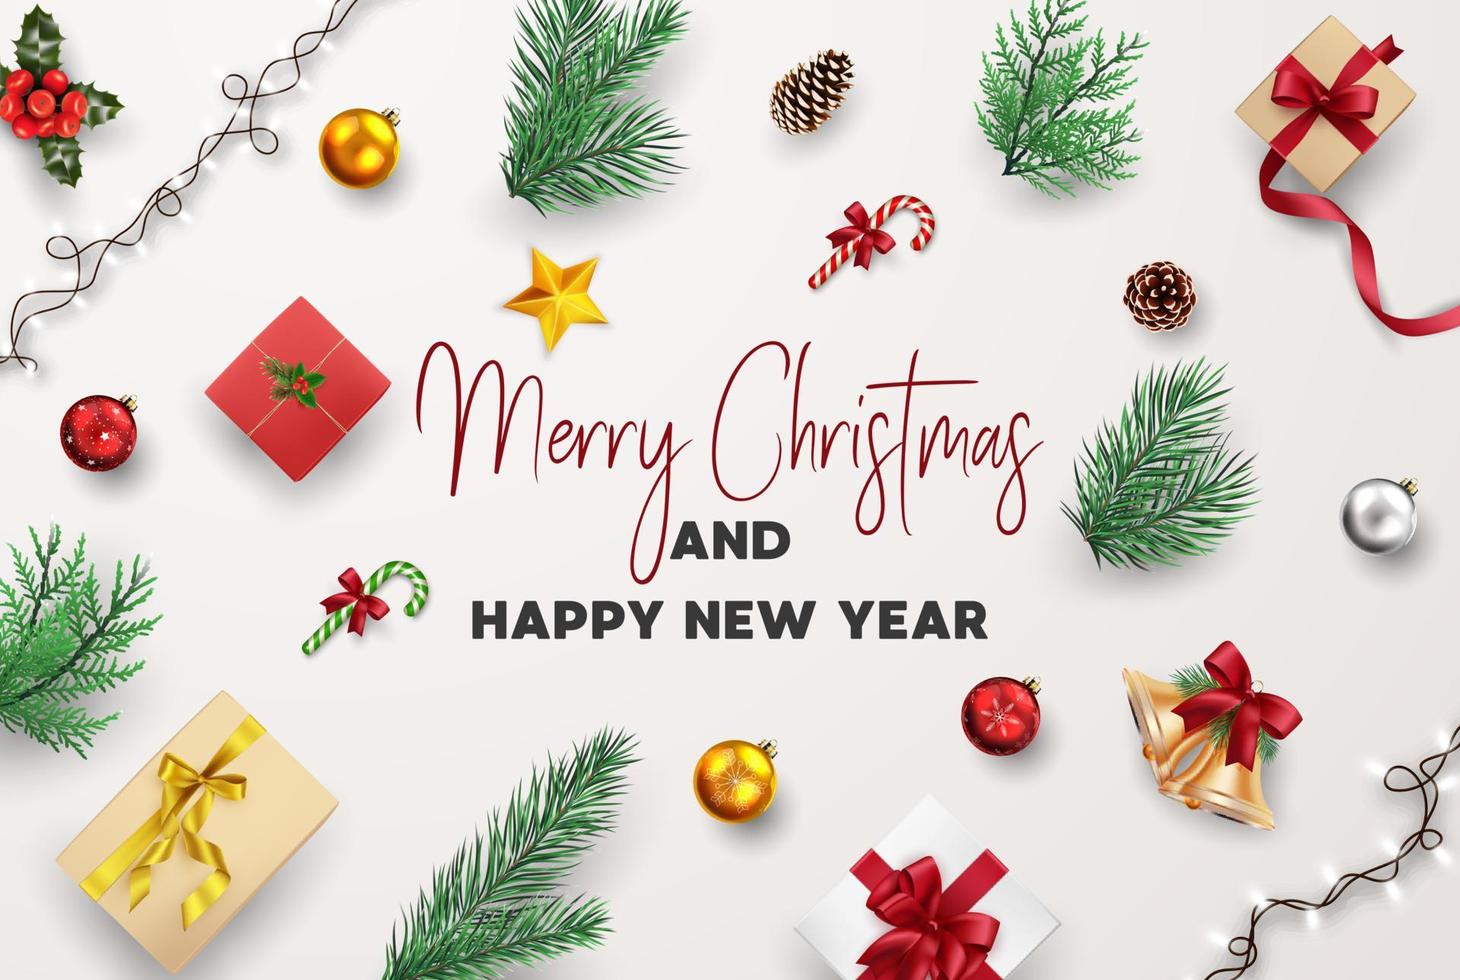 Composición de tarjetas de felicitación de navidad y feliz año nuevo de elementos con adornos navideños. vector